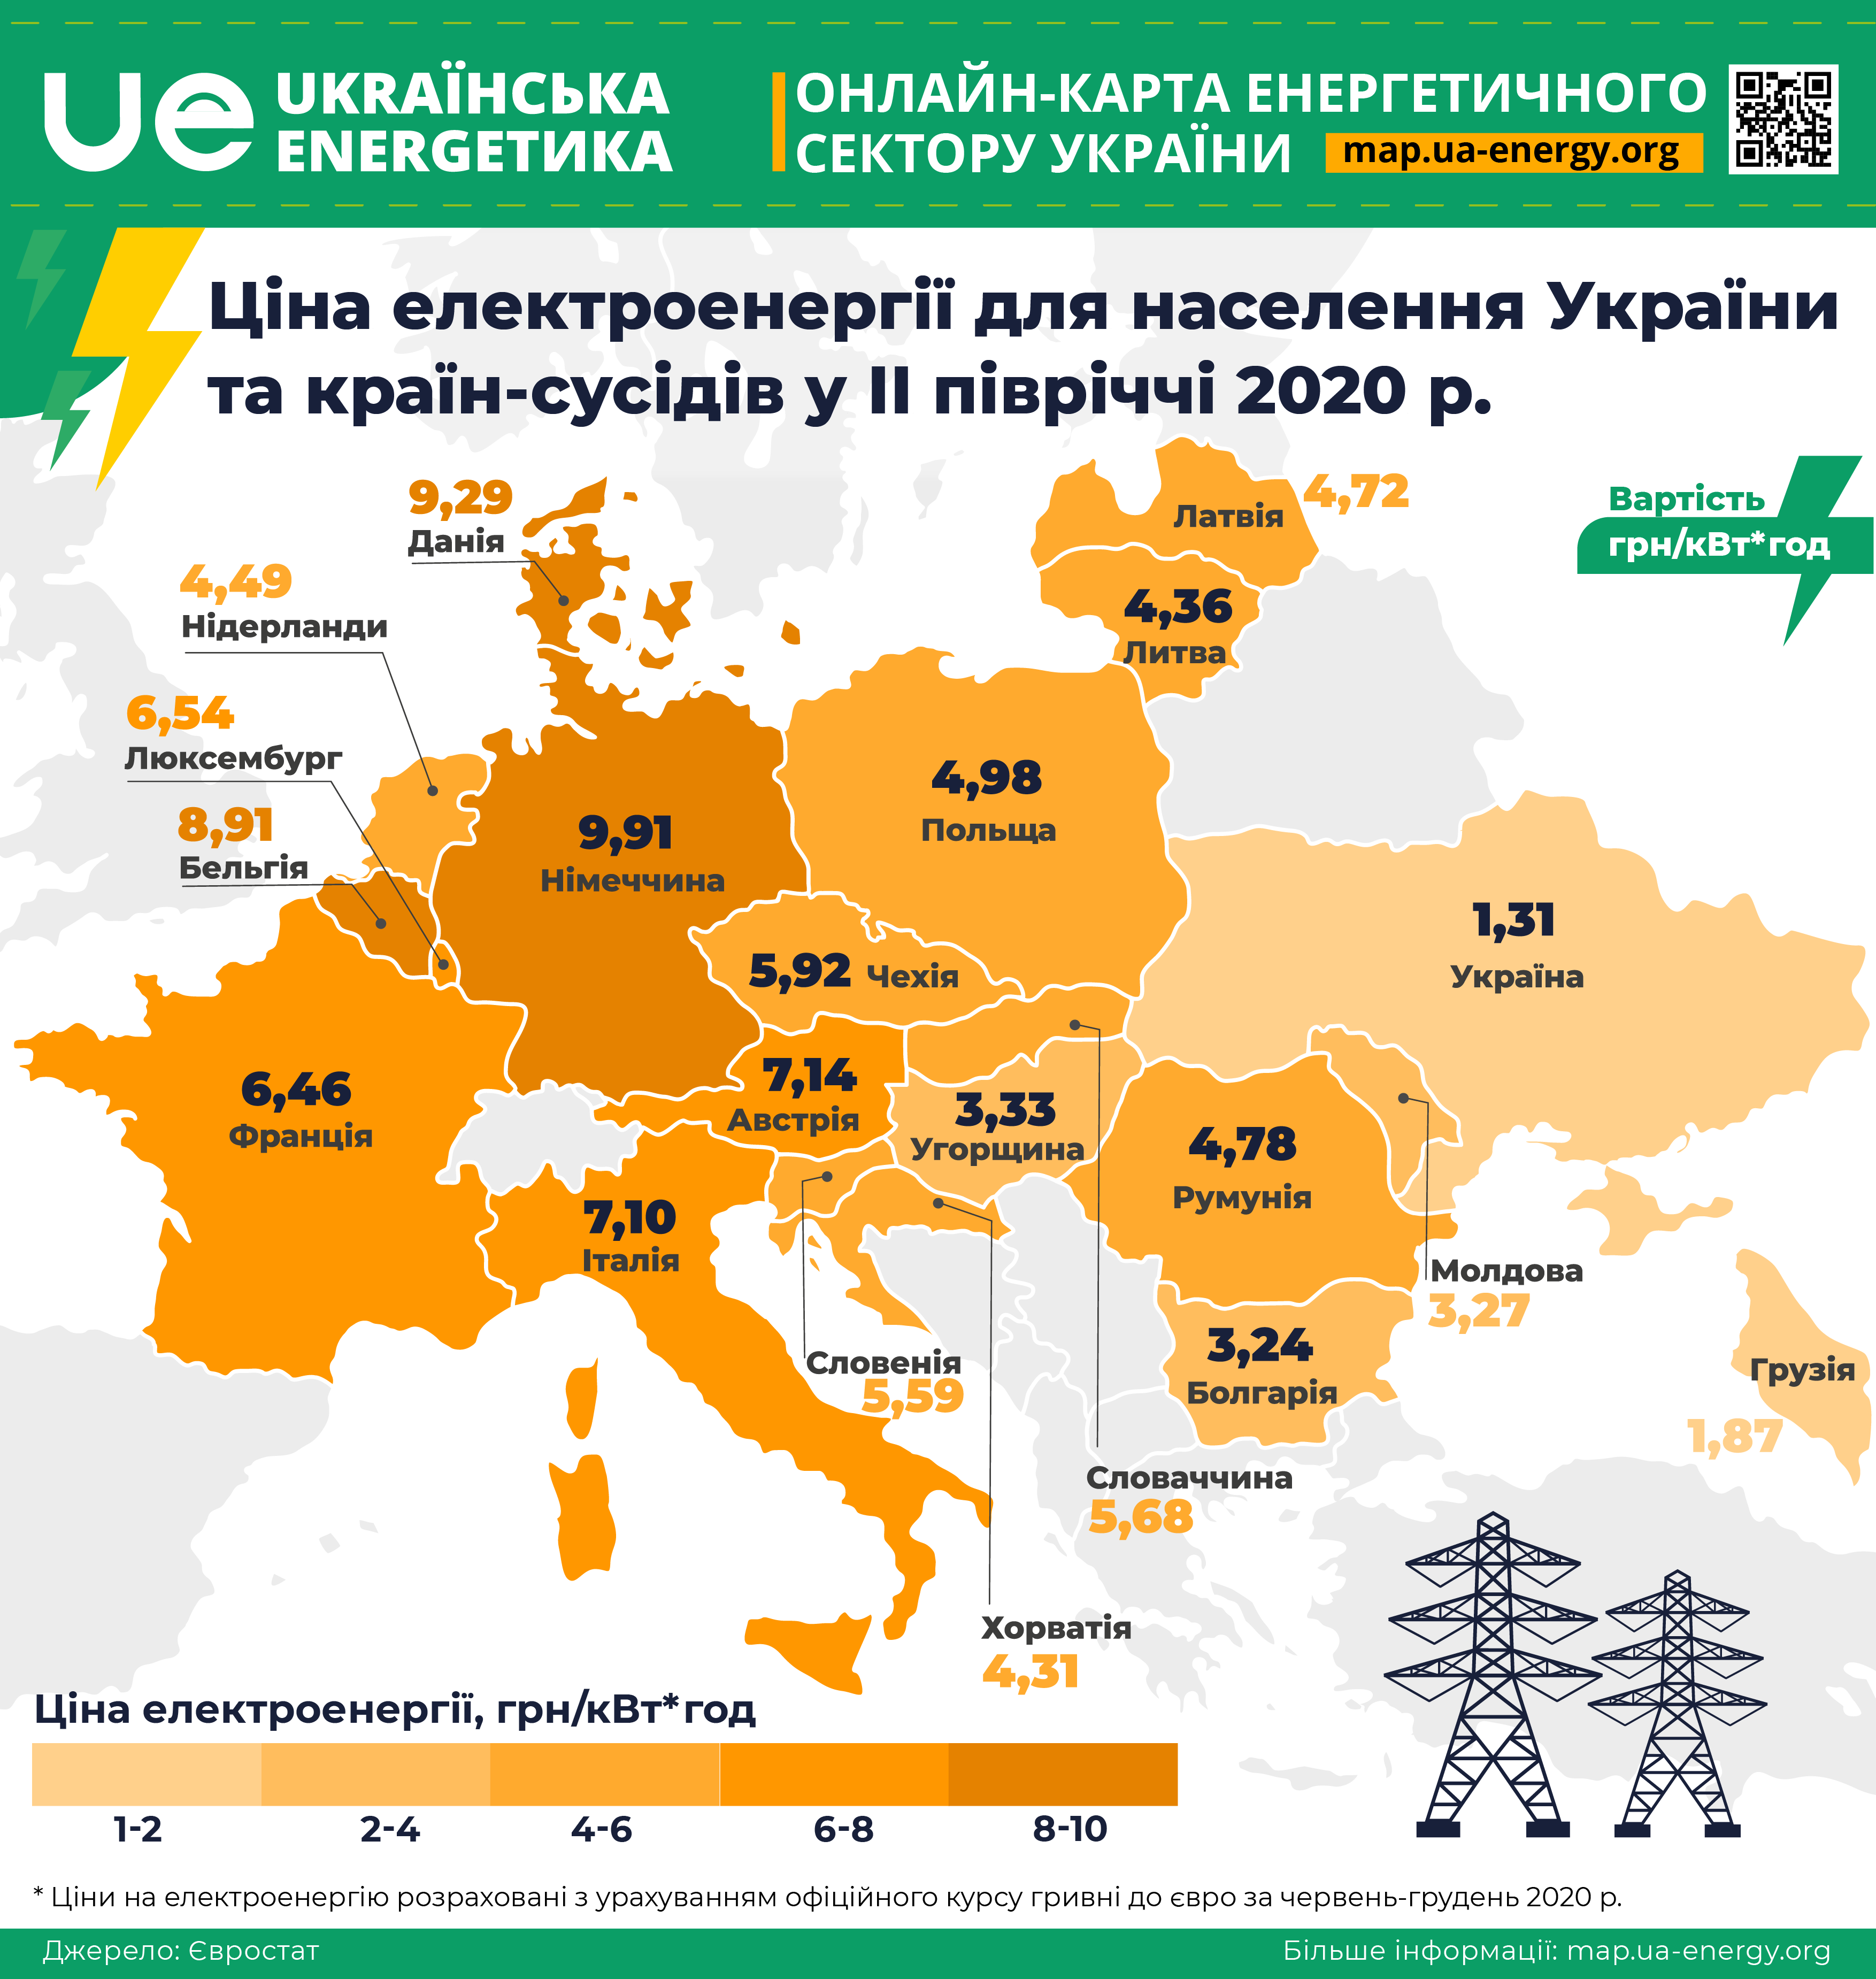 Де дорожча електроенергія - в Україні чи у країнах ЄС?